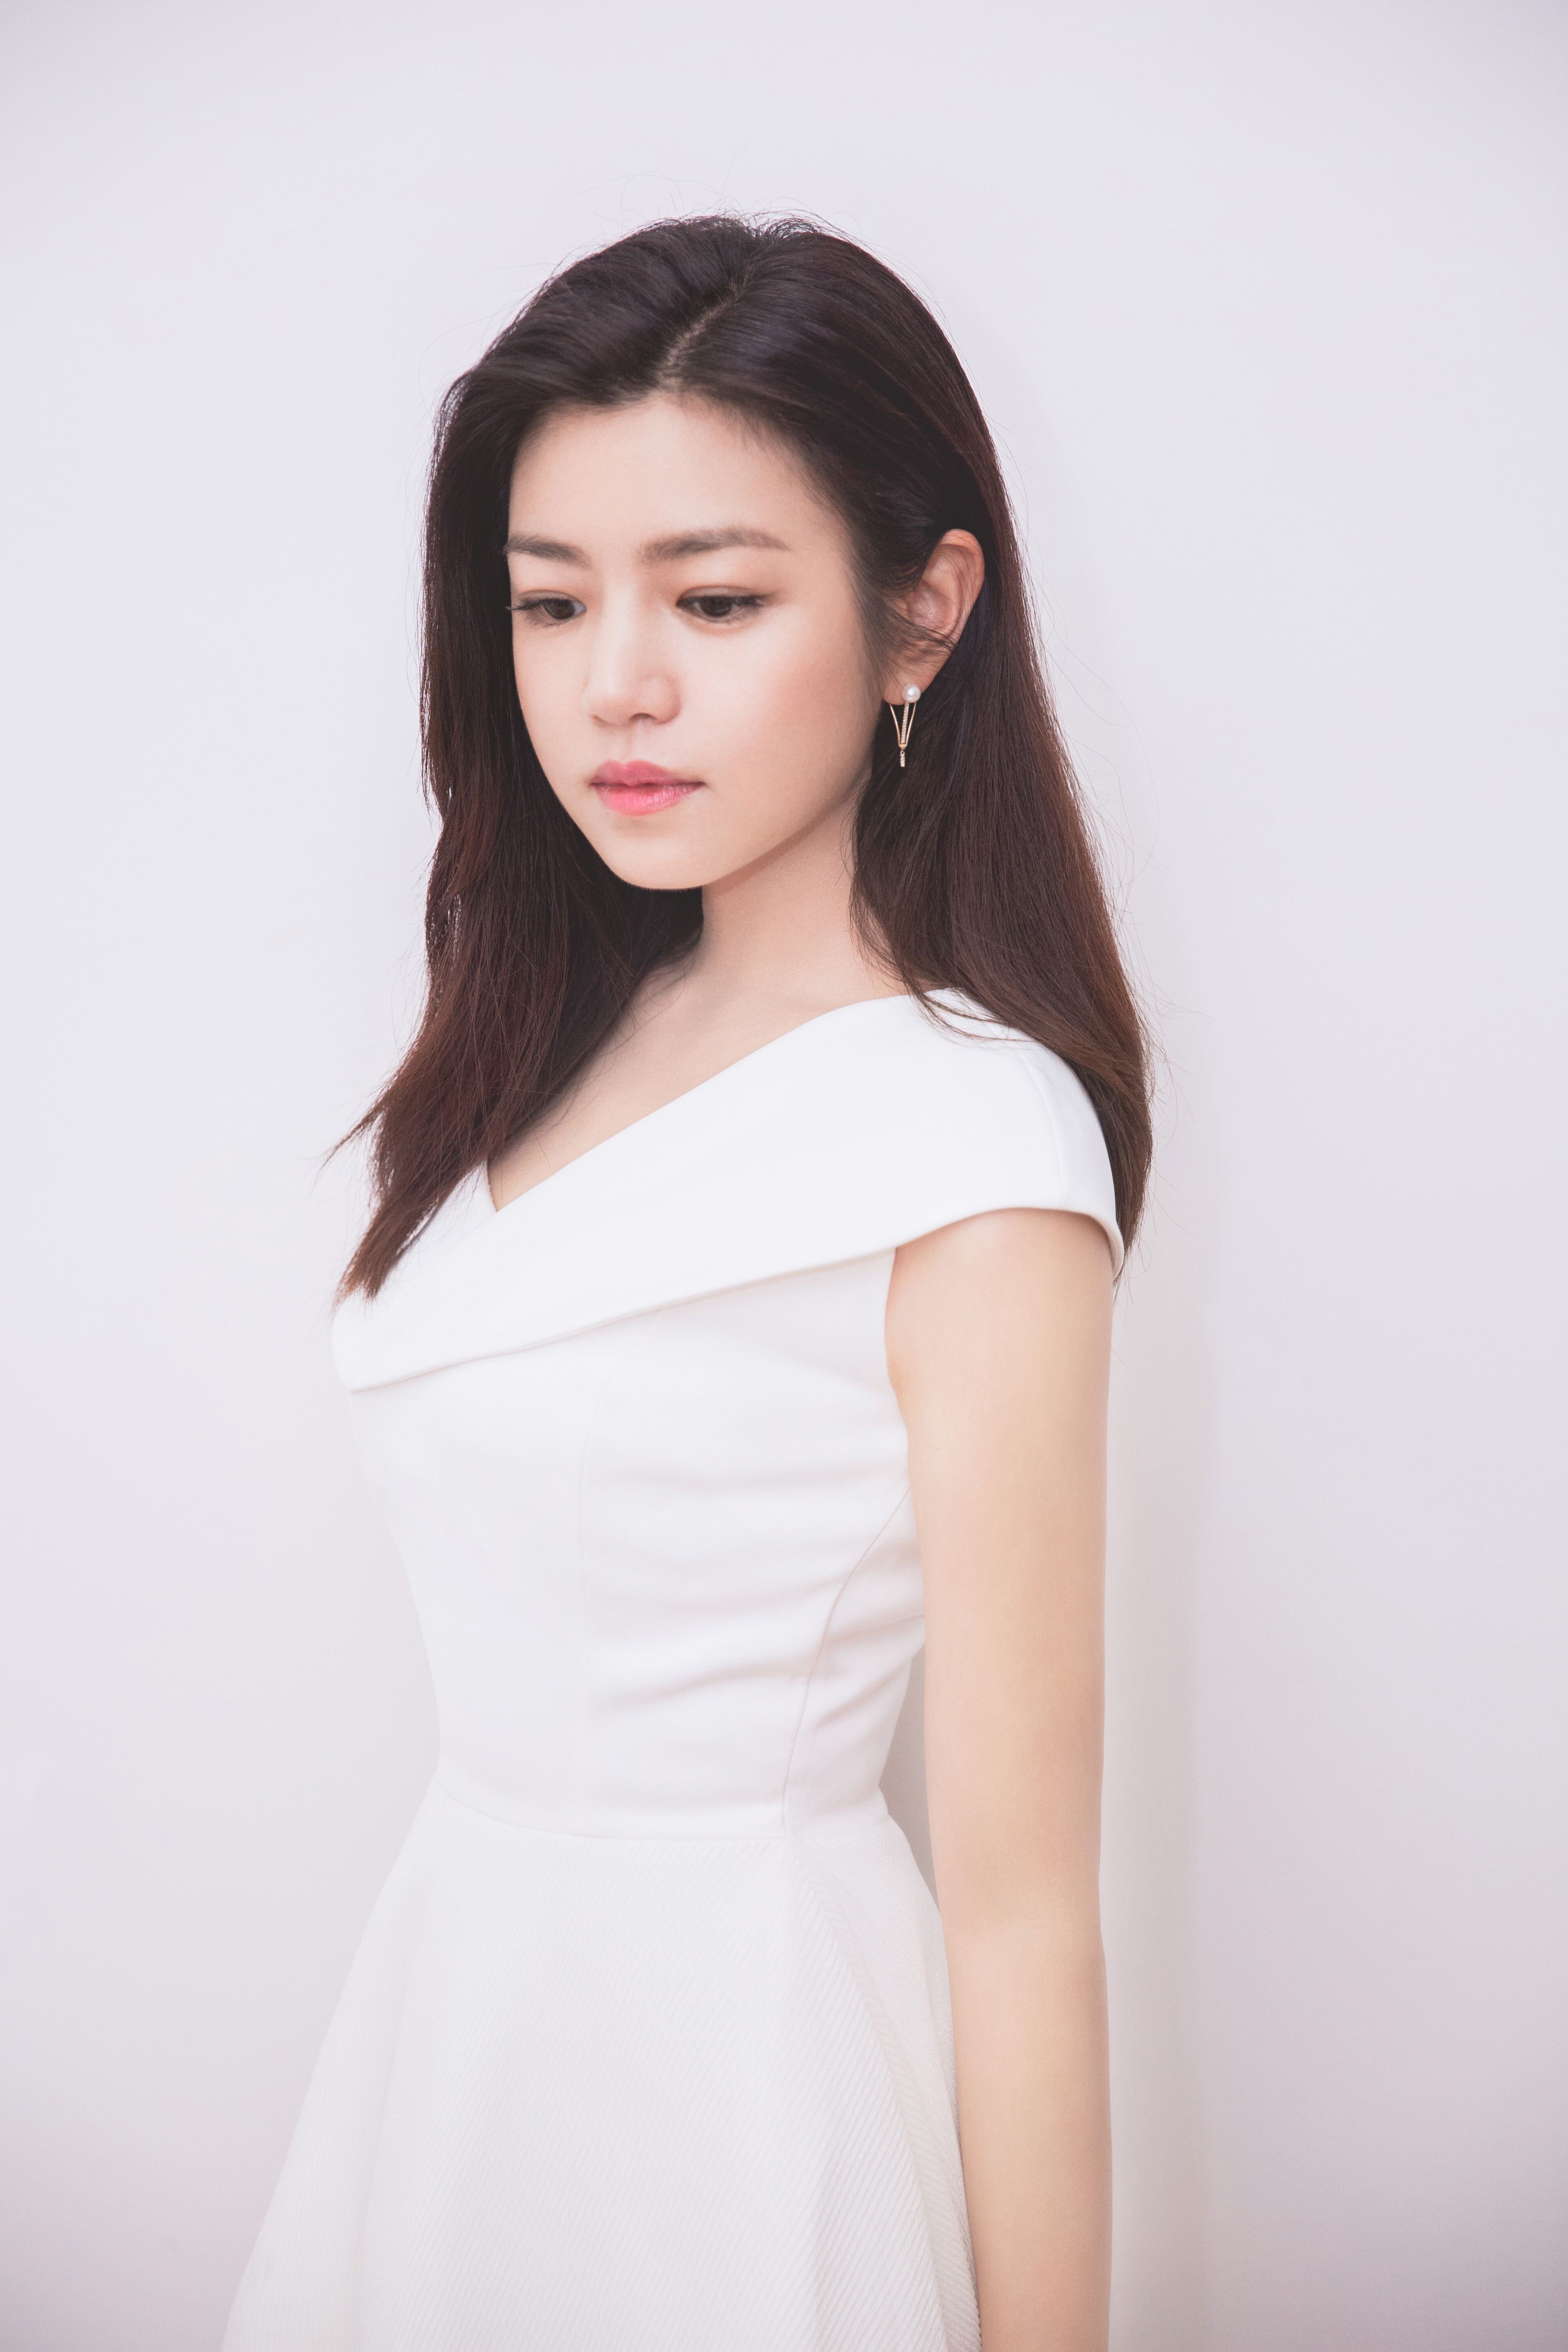 陈妍希现身品牌活动 白裙优雅状态满分